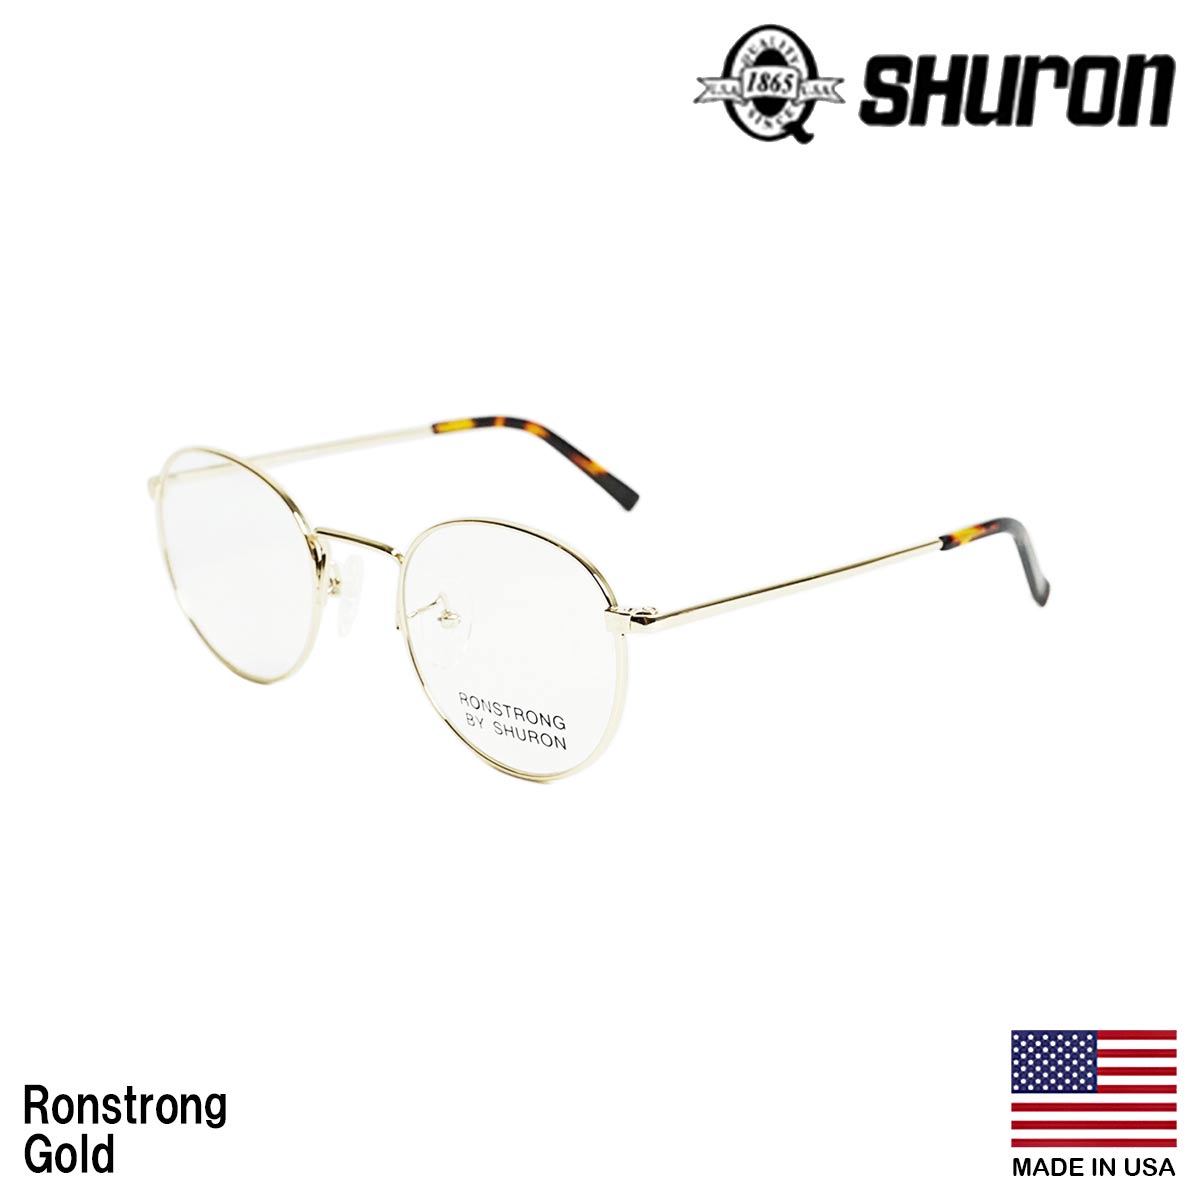 シュロン SHURON メガネ フレーム ロンストロング 眼鏡 アメリカ製